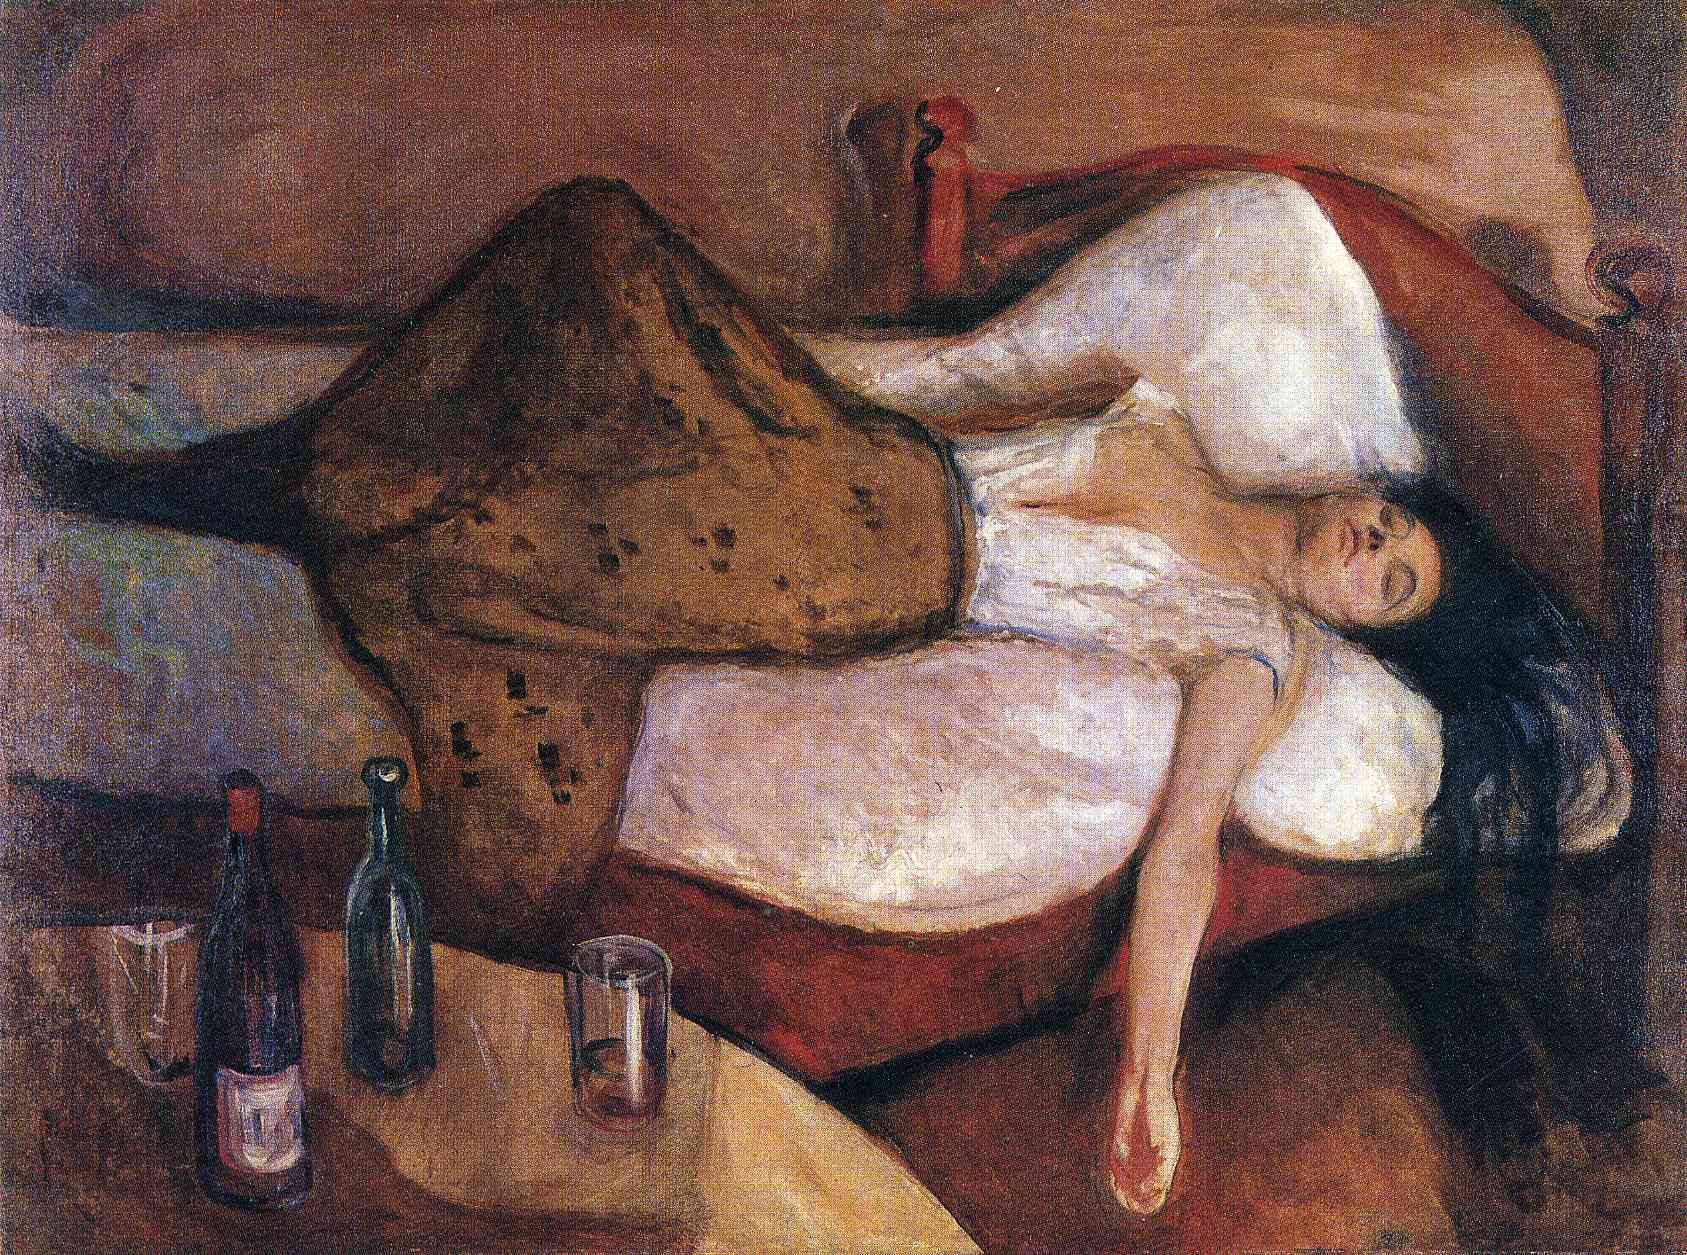 De dag erna by Edvard Munch - 1894/95 - 115 x 152 cm Nationaal Museum (Nasjonalmuseet)